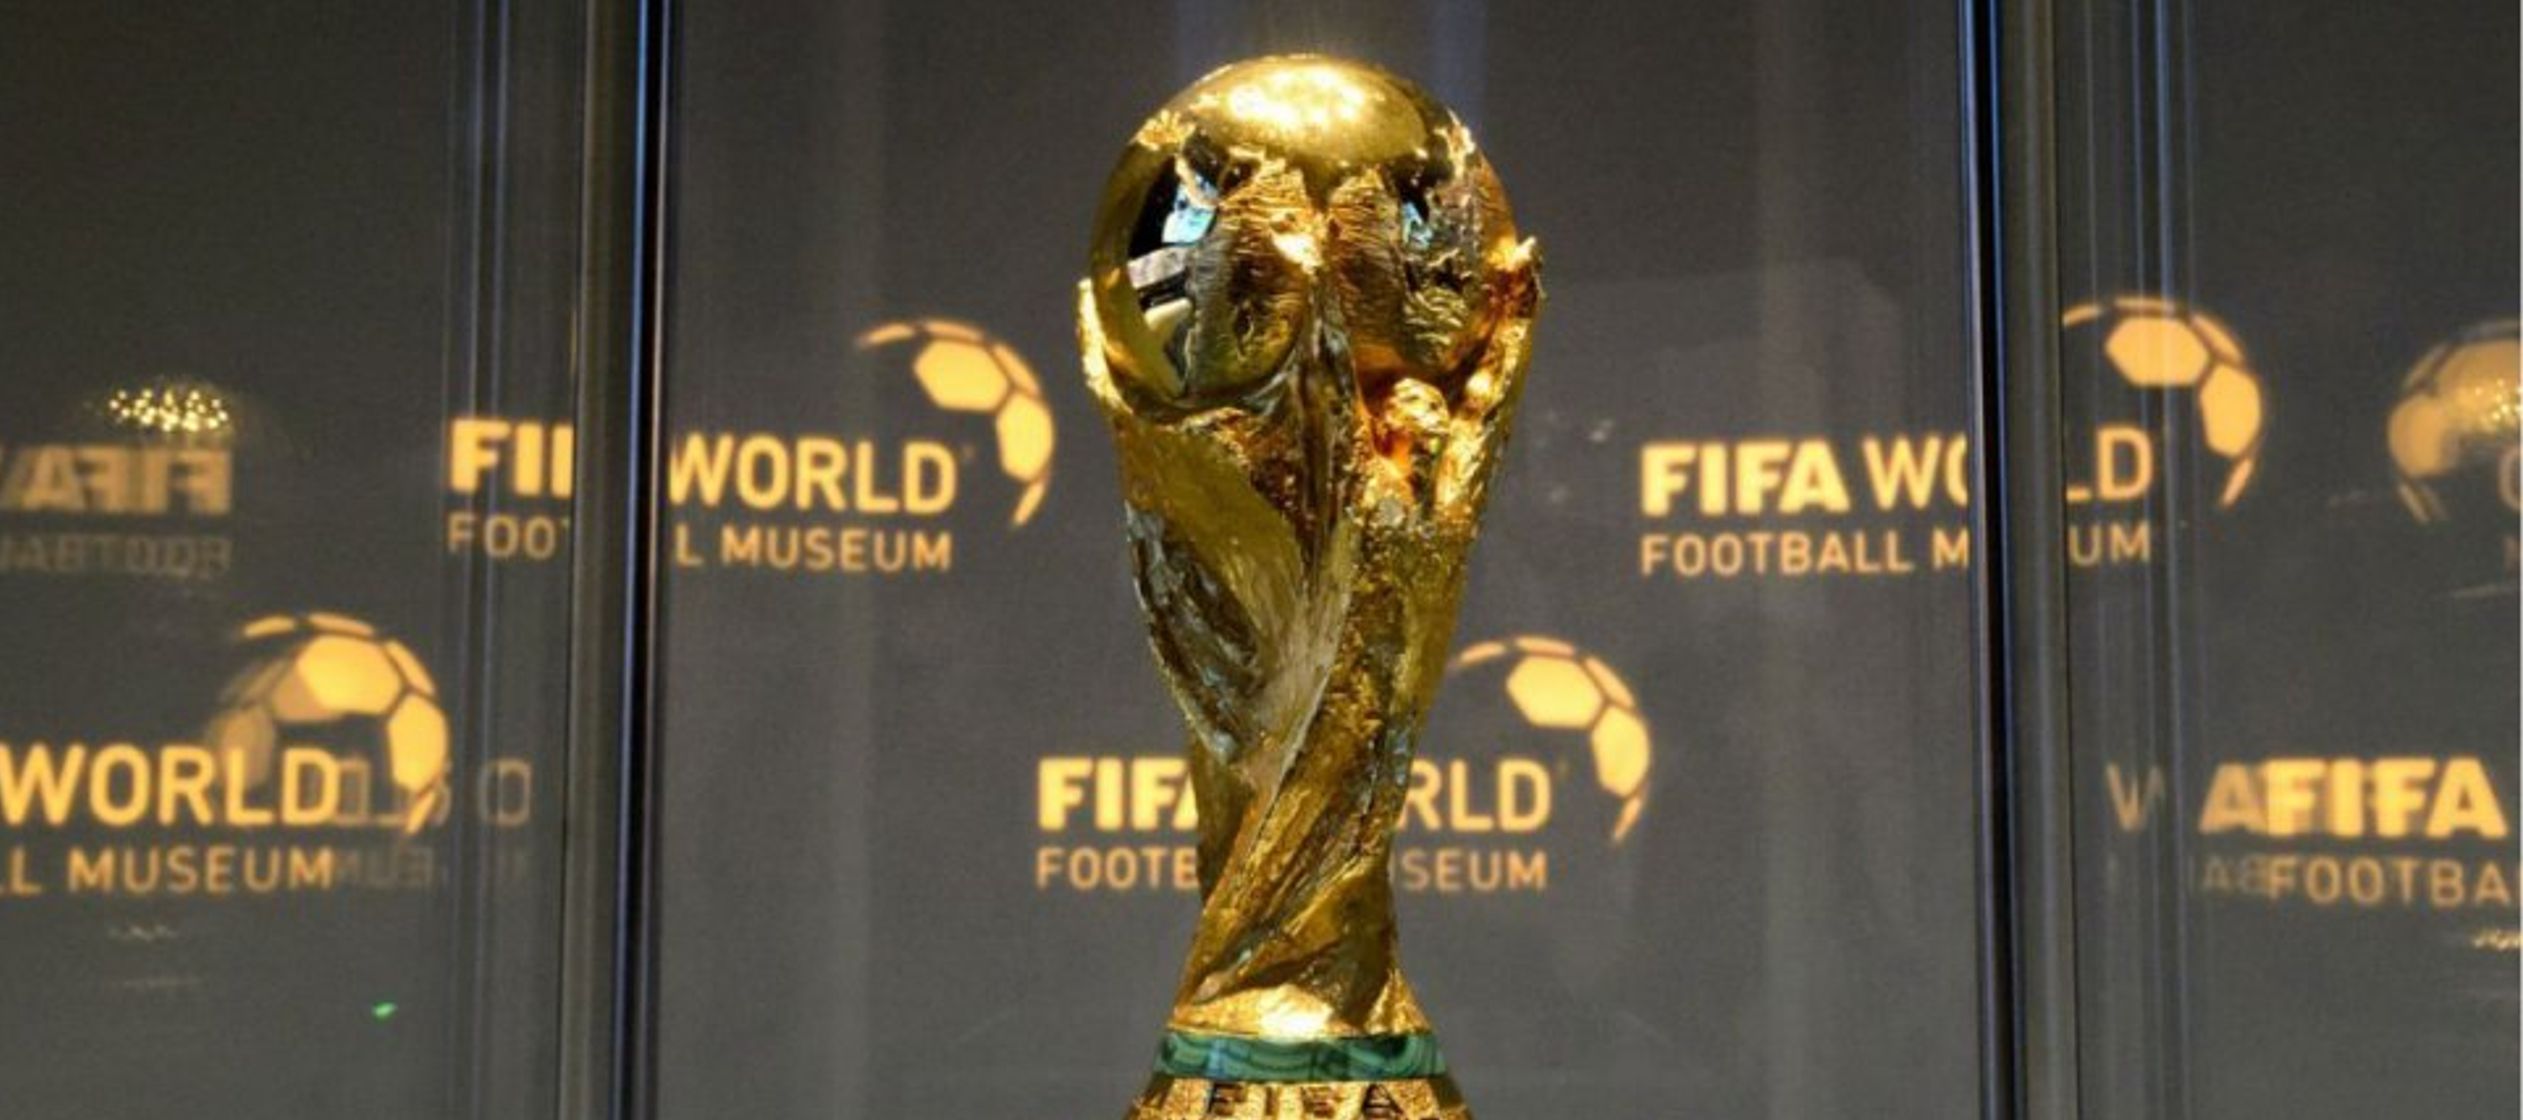 "Escuchamos que China hará una oferta para ser sede de la Copa del Mundo",...